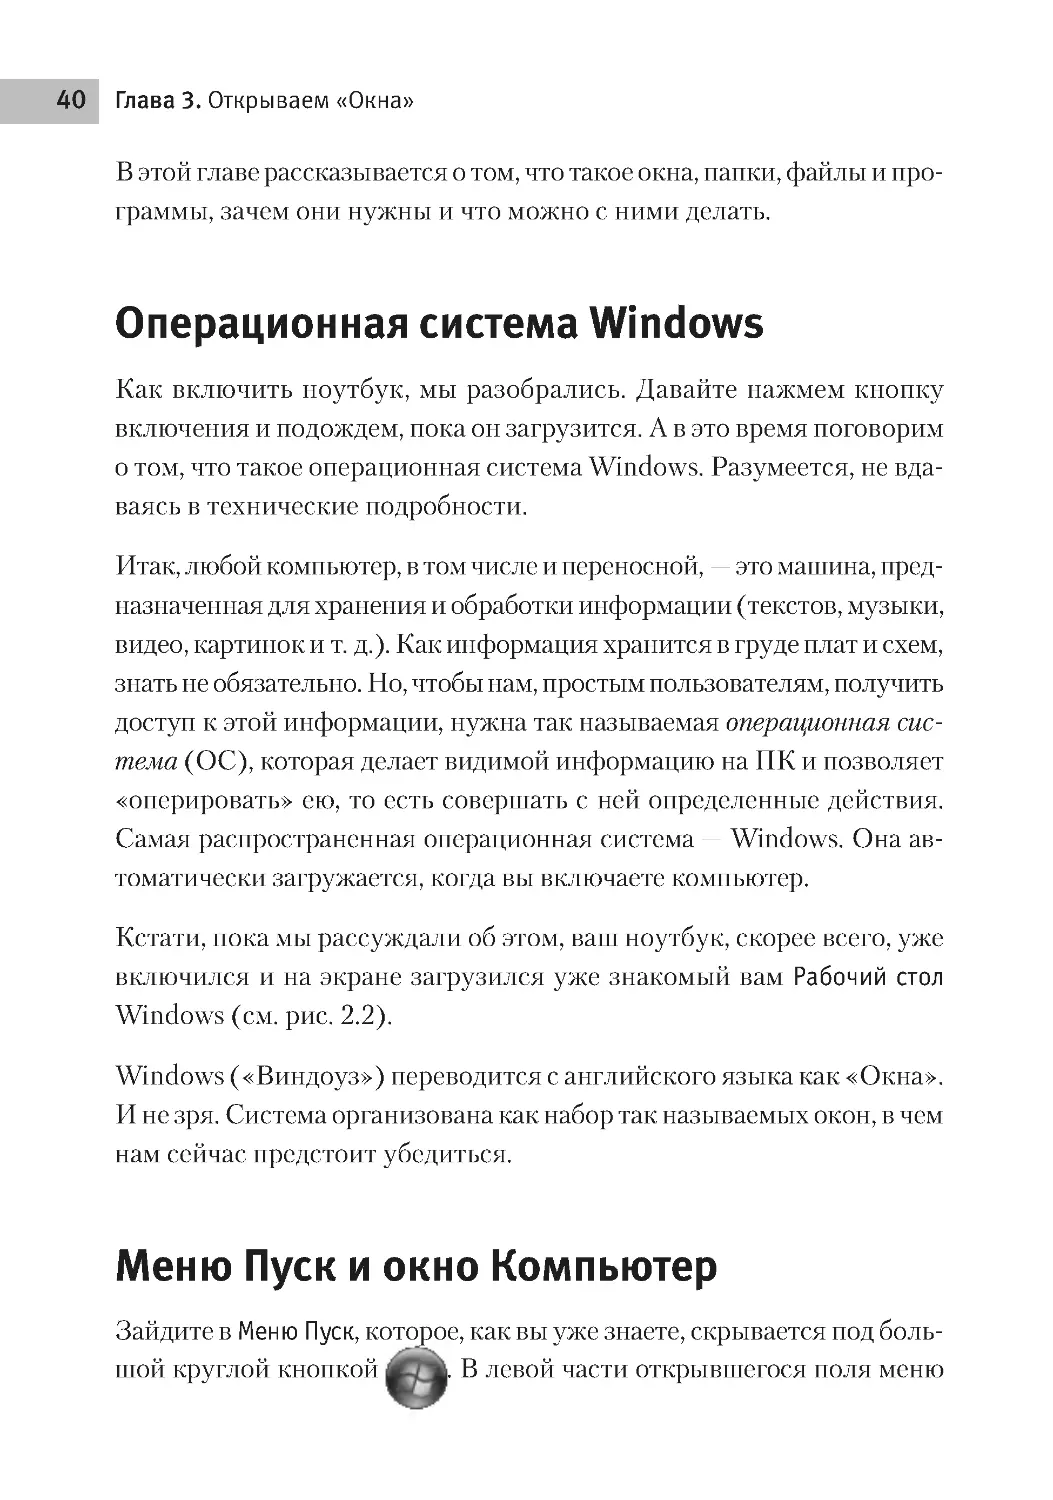 Меню Пуск и окно Компьютер